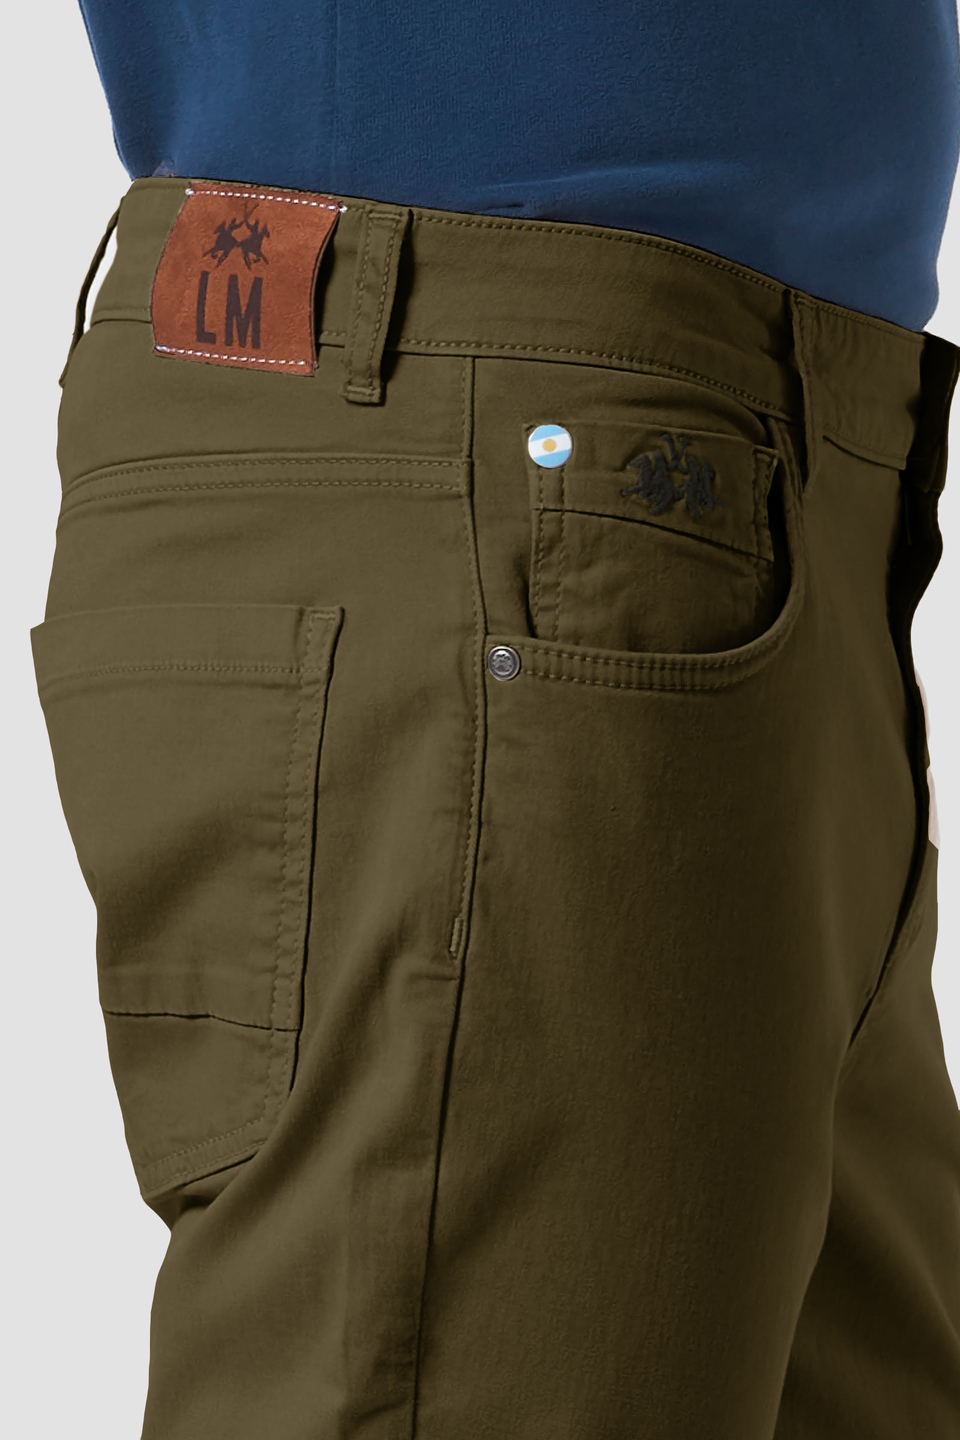 5-pocket stretch cotton trousers - La Martina - Official Online Shop